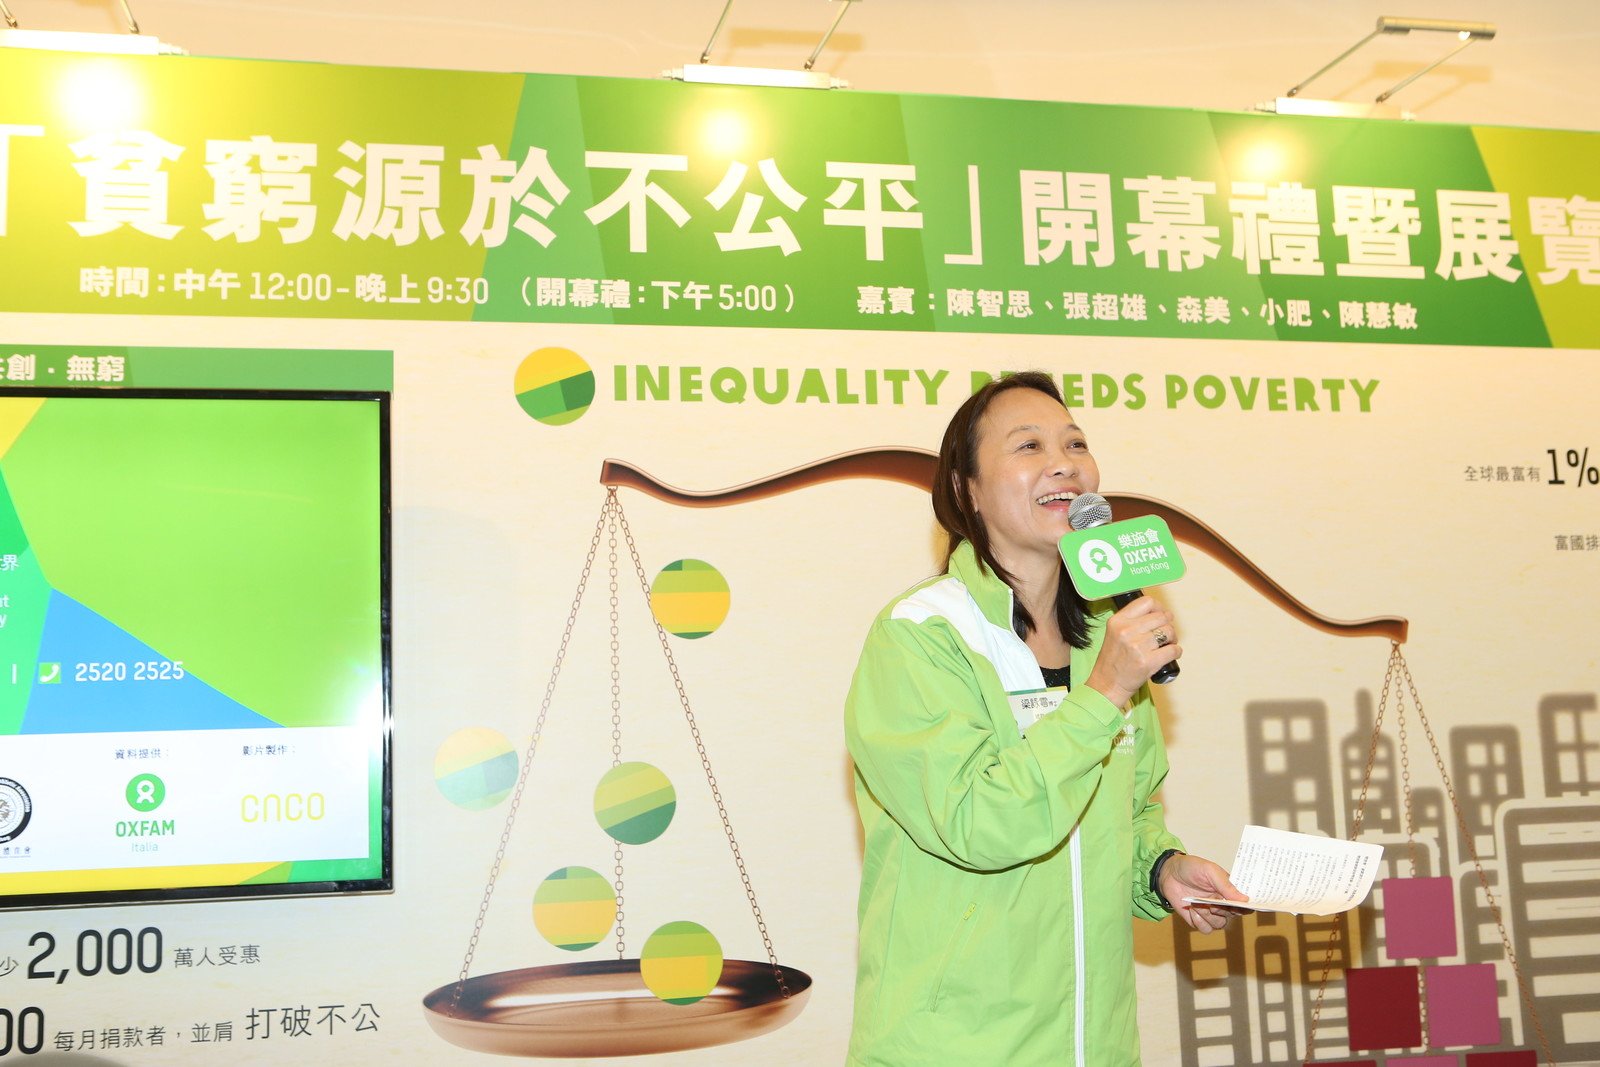 樂施會總裁梁詠雩在「貧窮源於不公平」開幕禮暨展覽上致辭